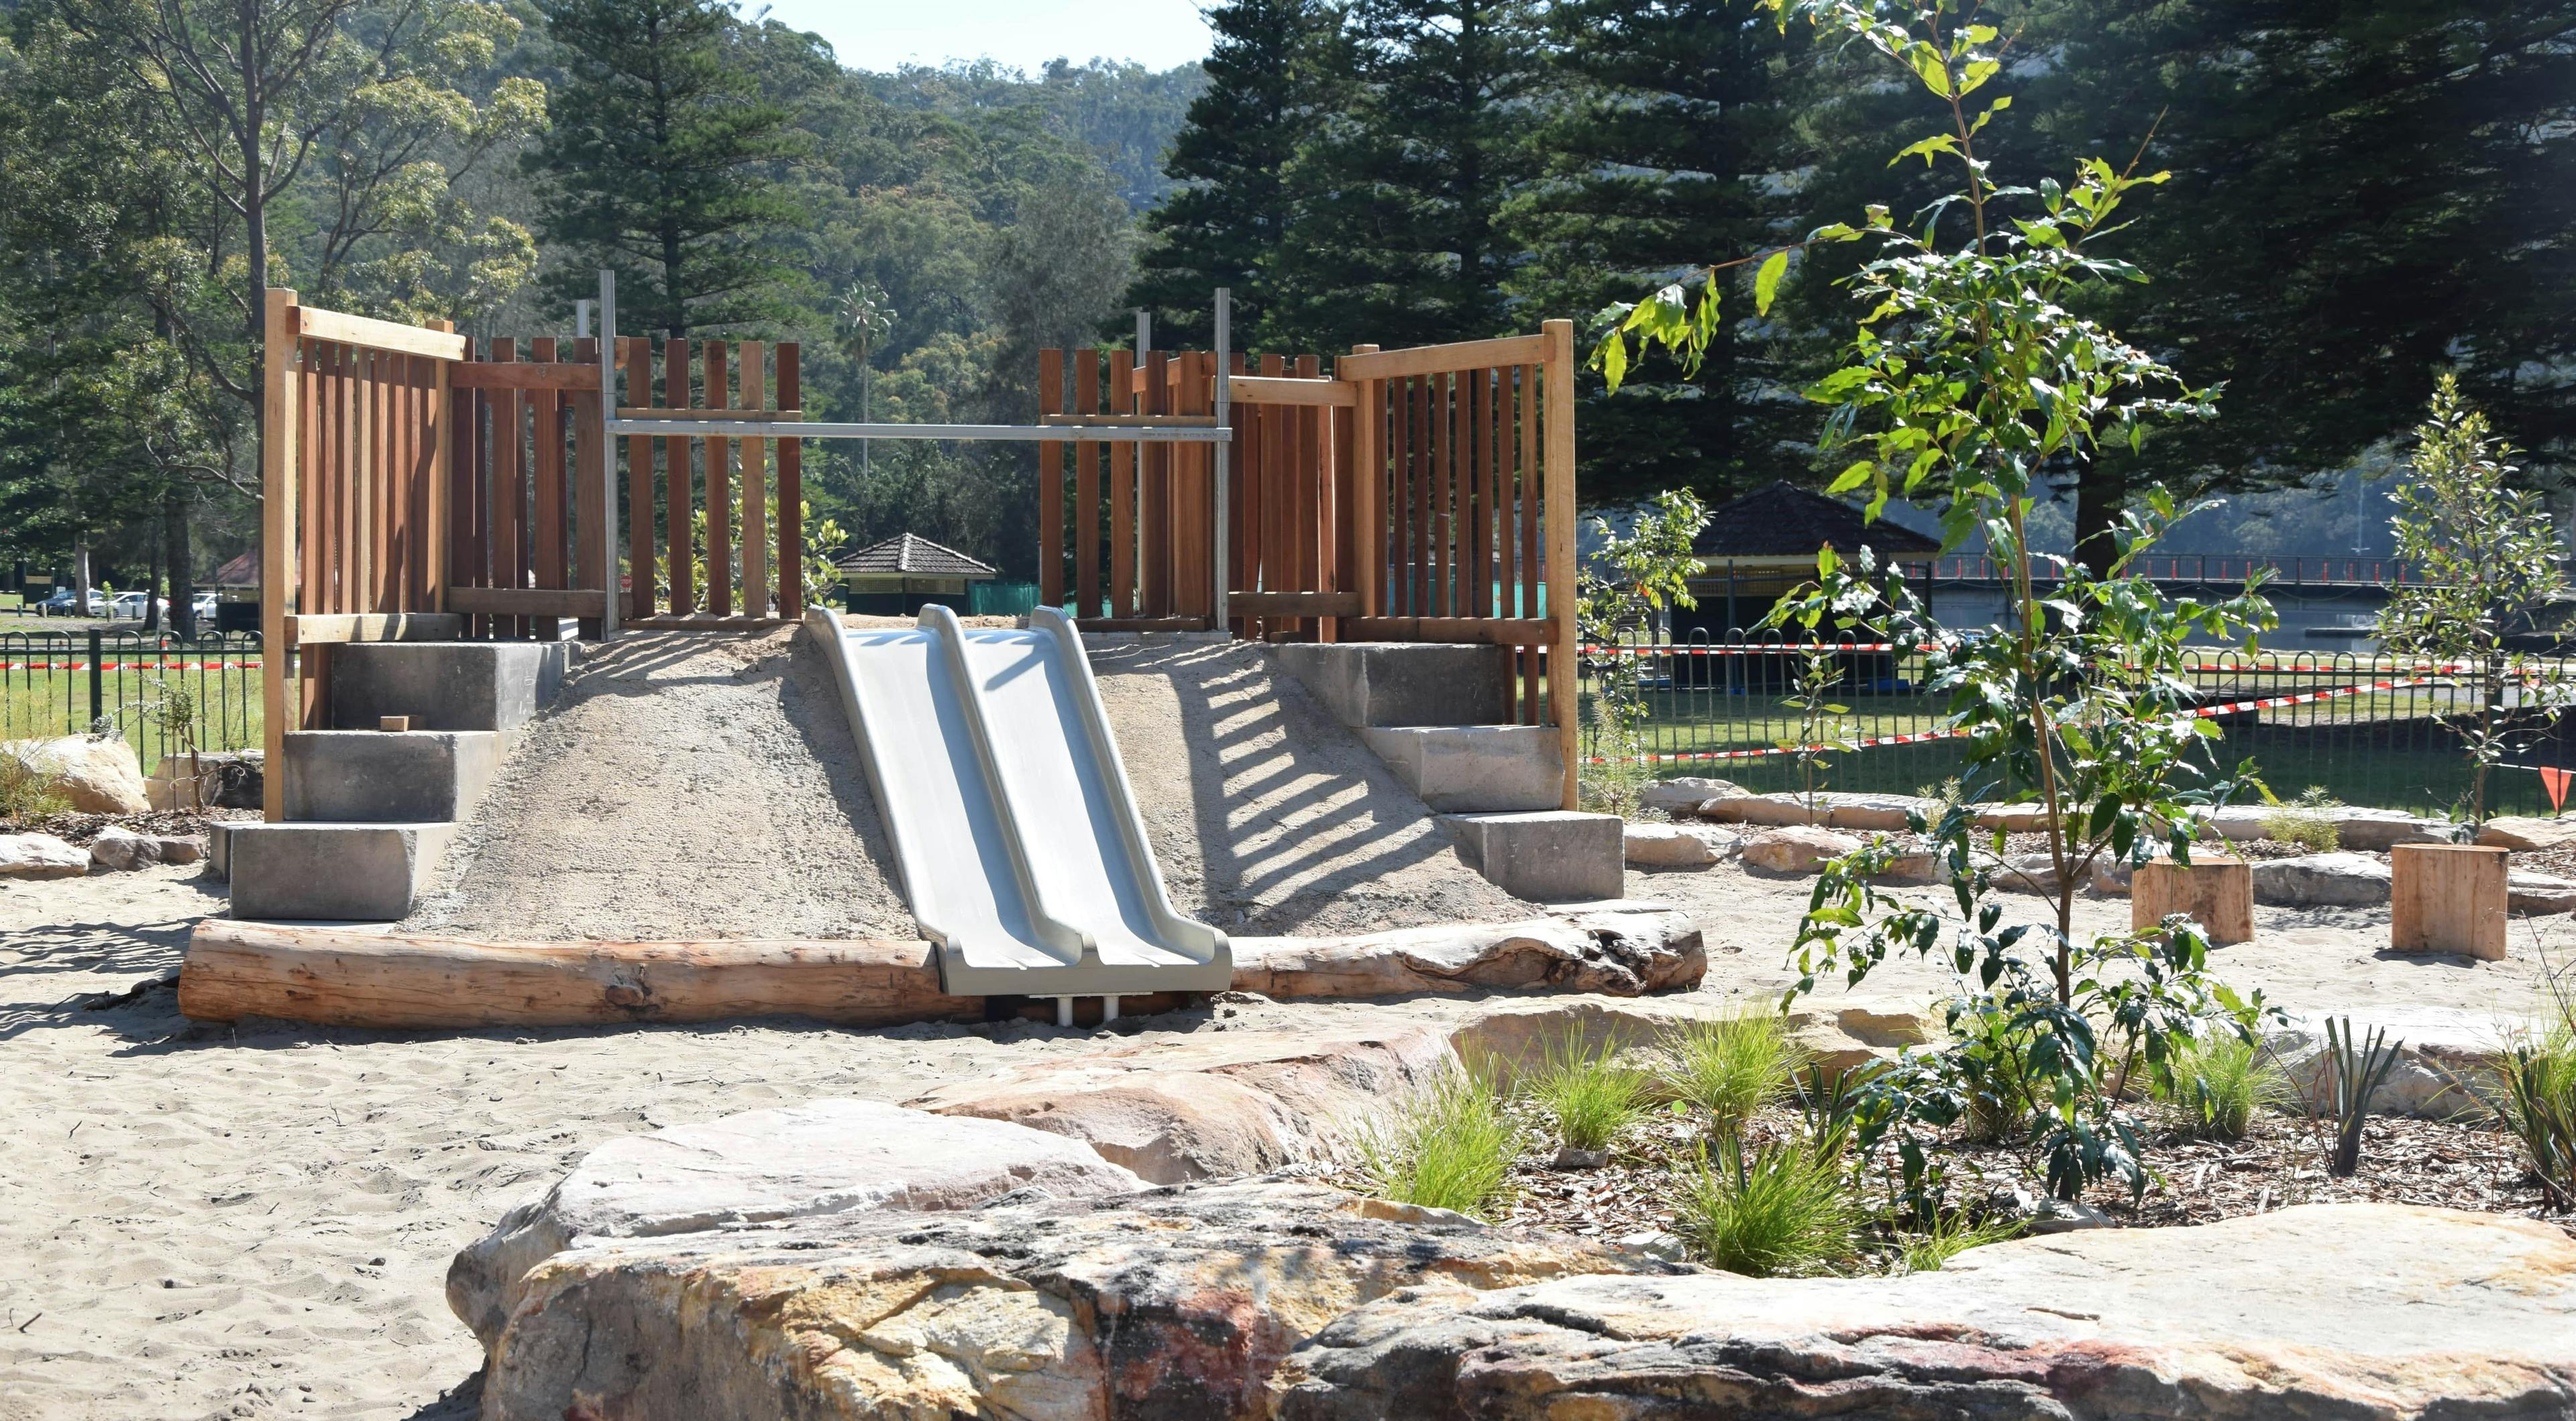 Ku-ring-gai Chase National Park natured-based playground